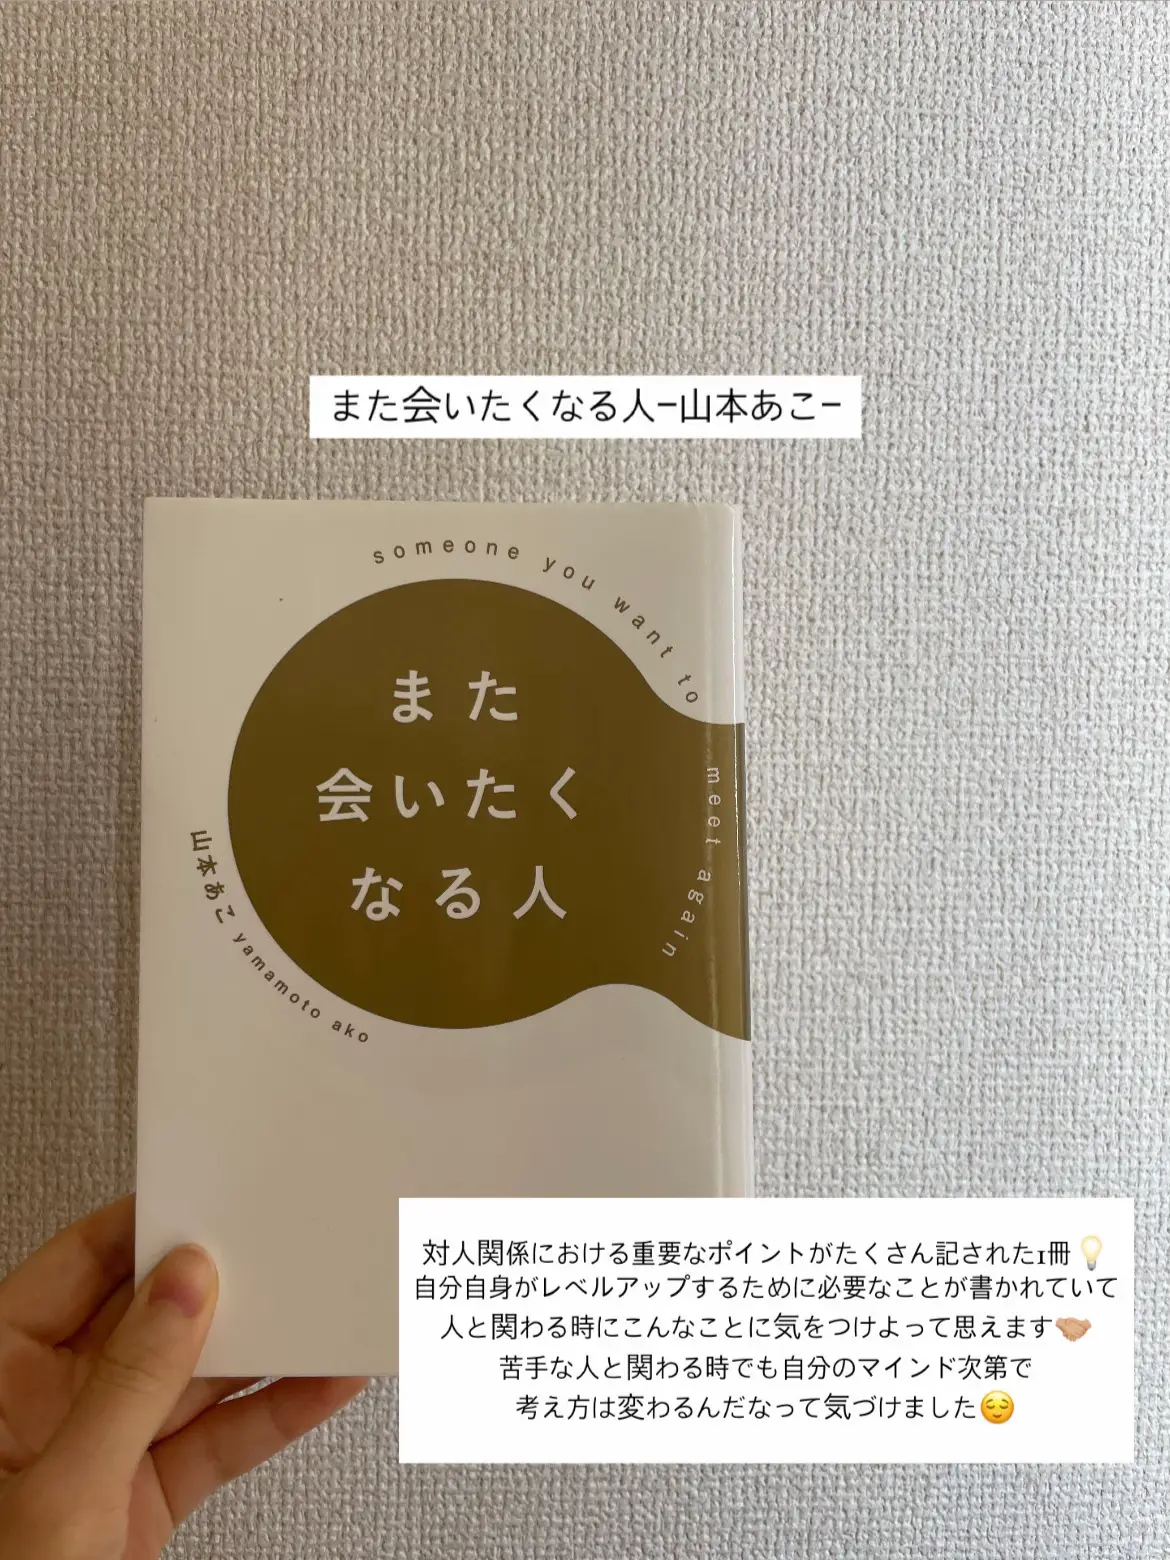 おすすめの本 自己啓発 - Lemon8検索